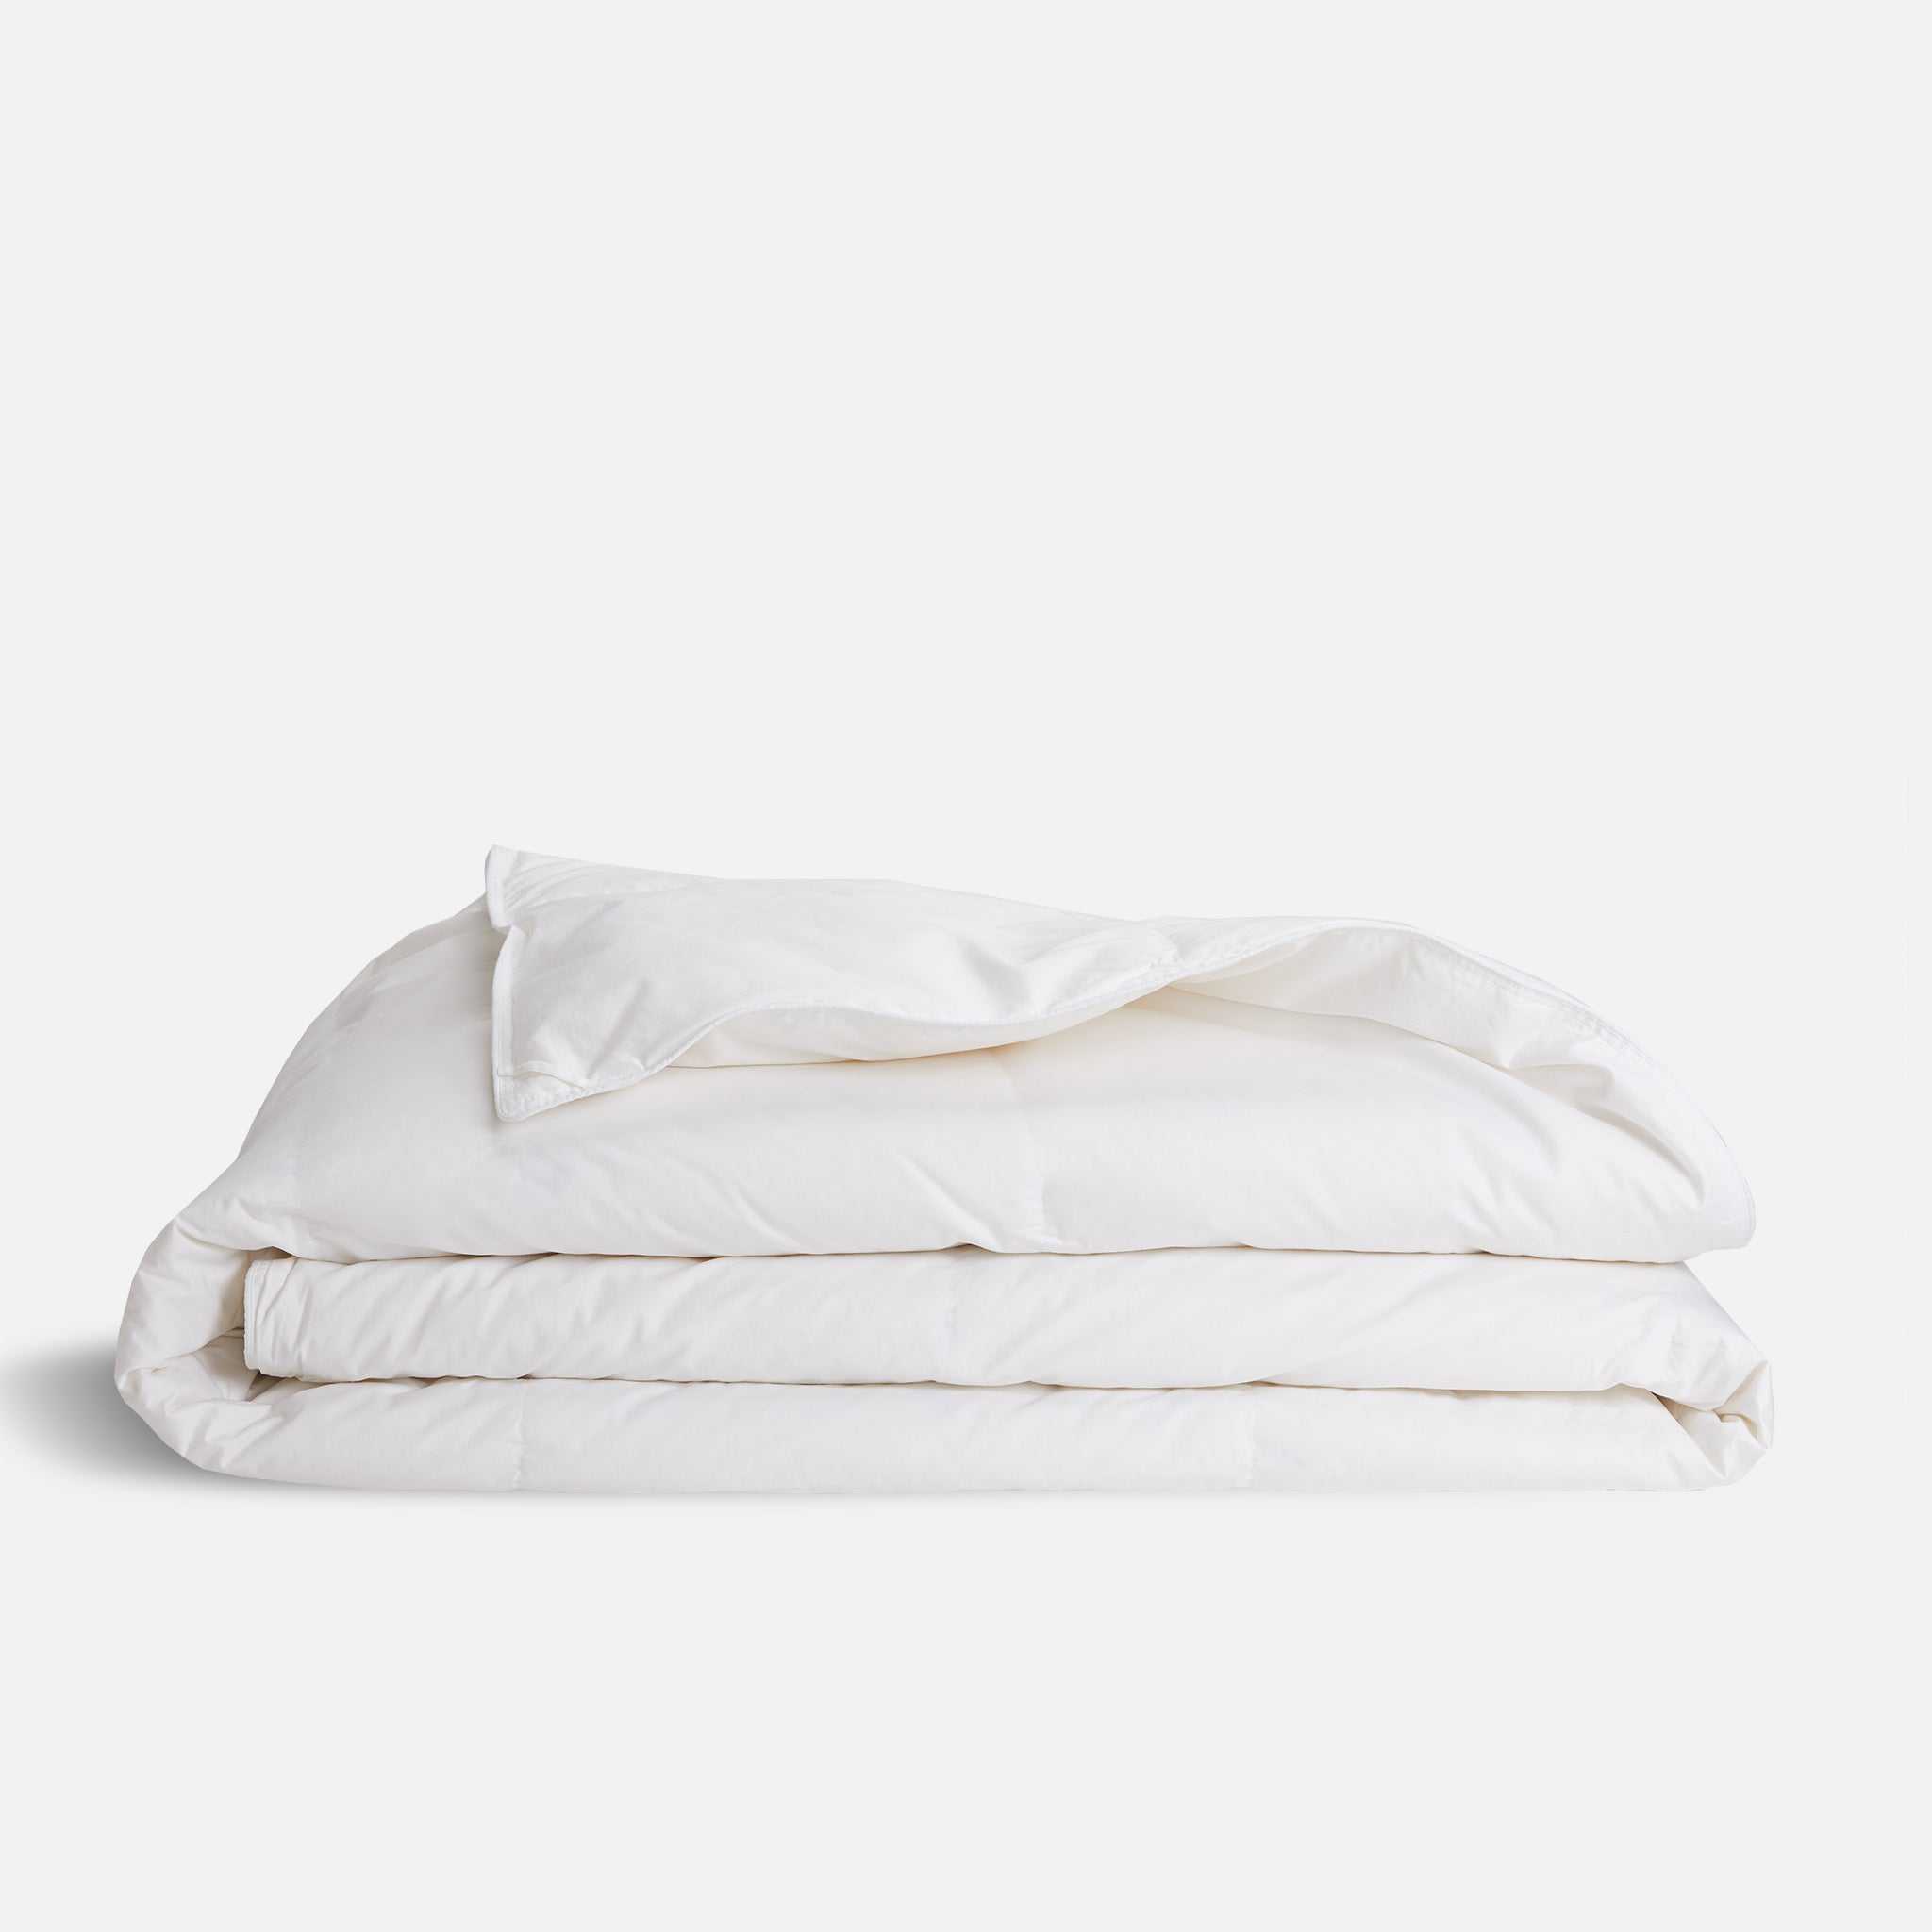 Brooklinen Down Alternative Comforter size Full/Queen